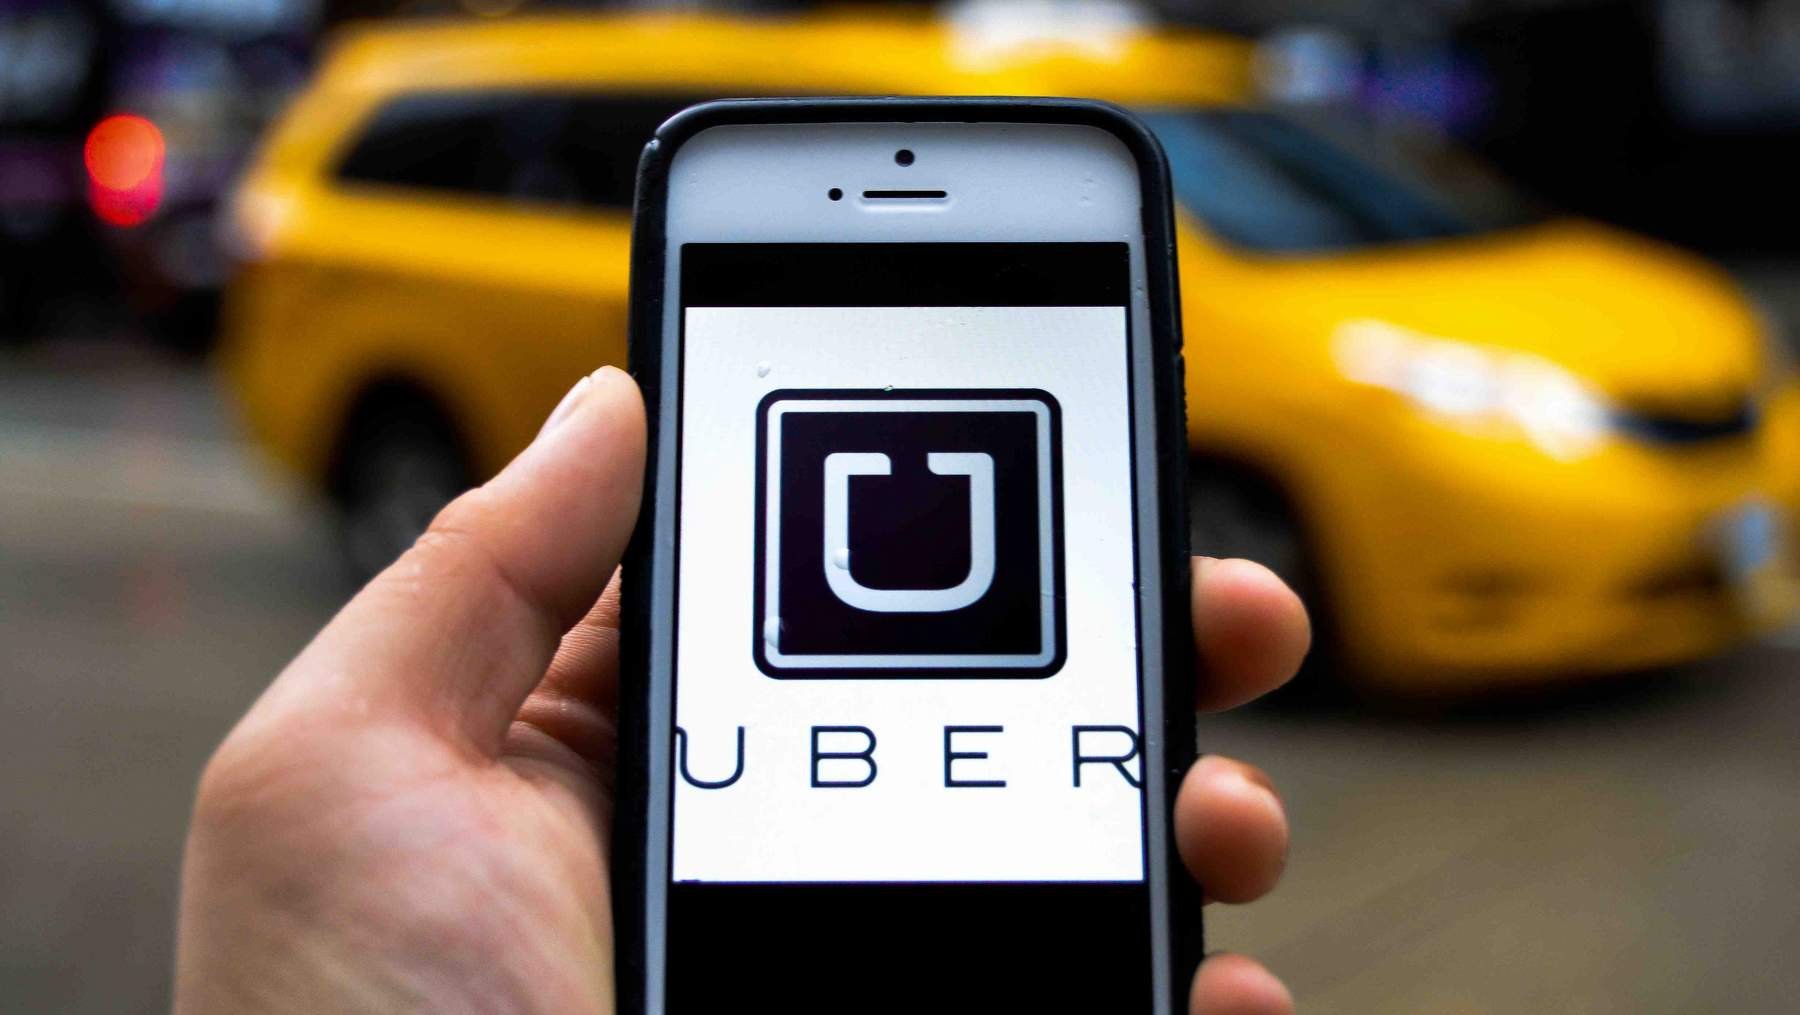  Uber a intrat pe piaţa locală din Iaşi. La cât se ridică preţul pe kilometru?